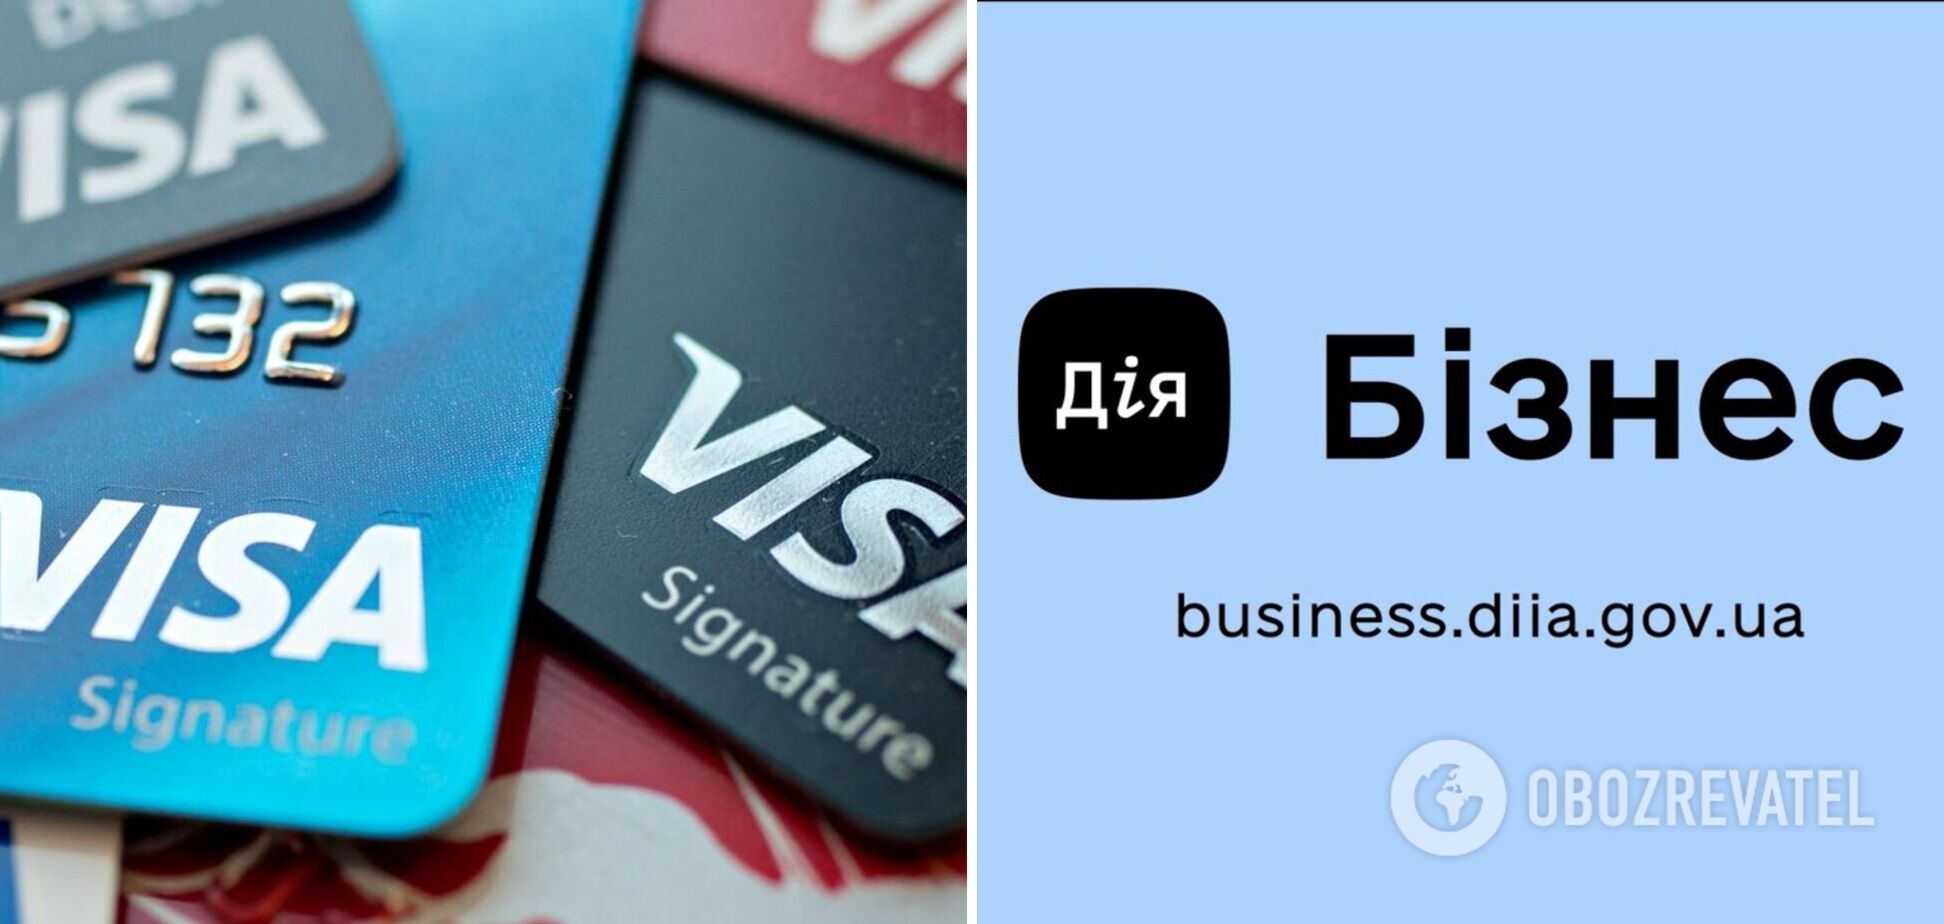 Visa финансово поддержала открытие обновленного консалтингового центра 'Дія. Бізнес' в Буче